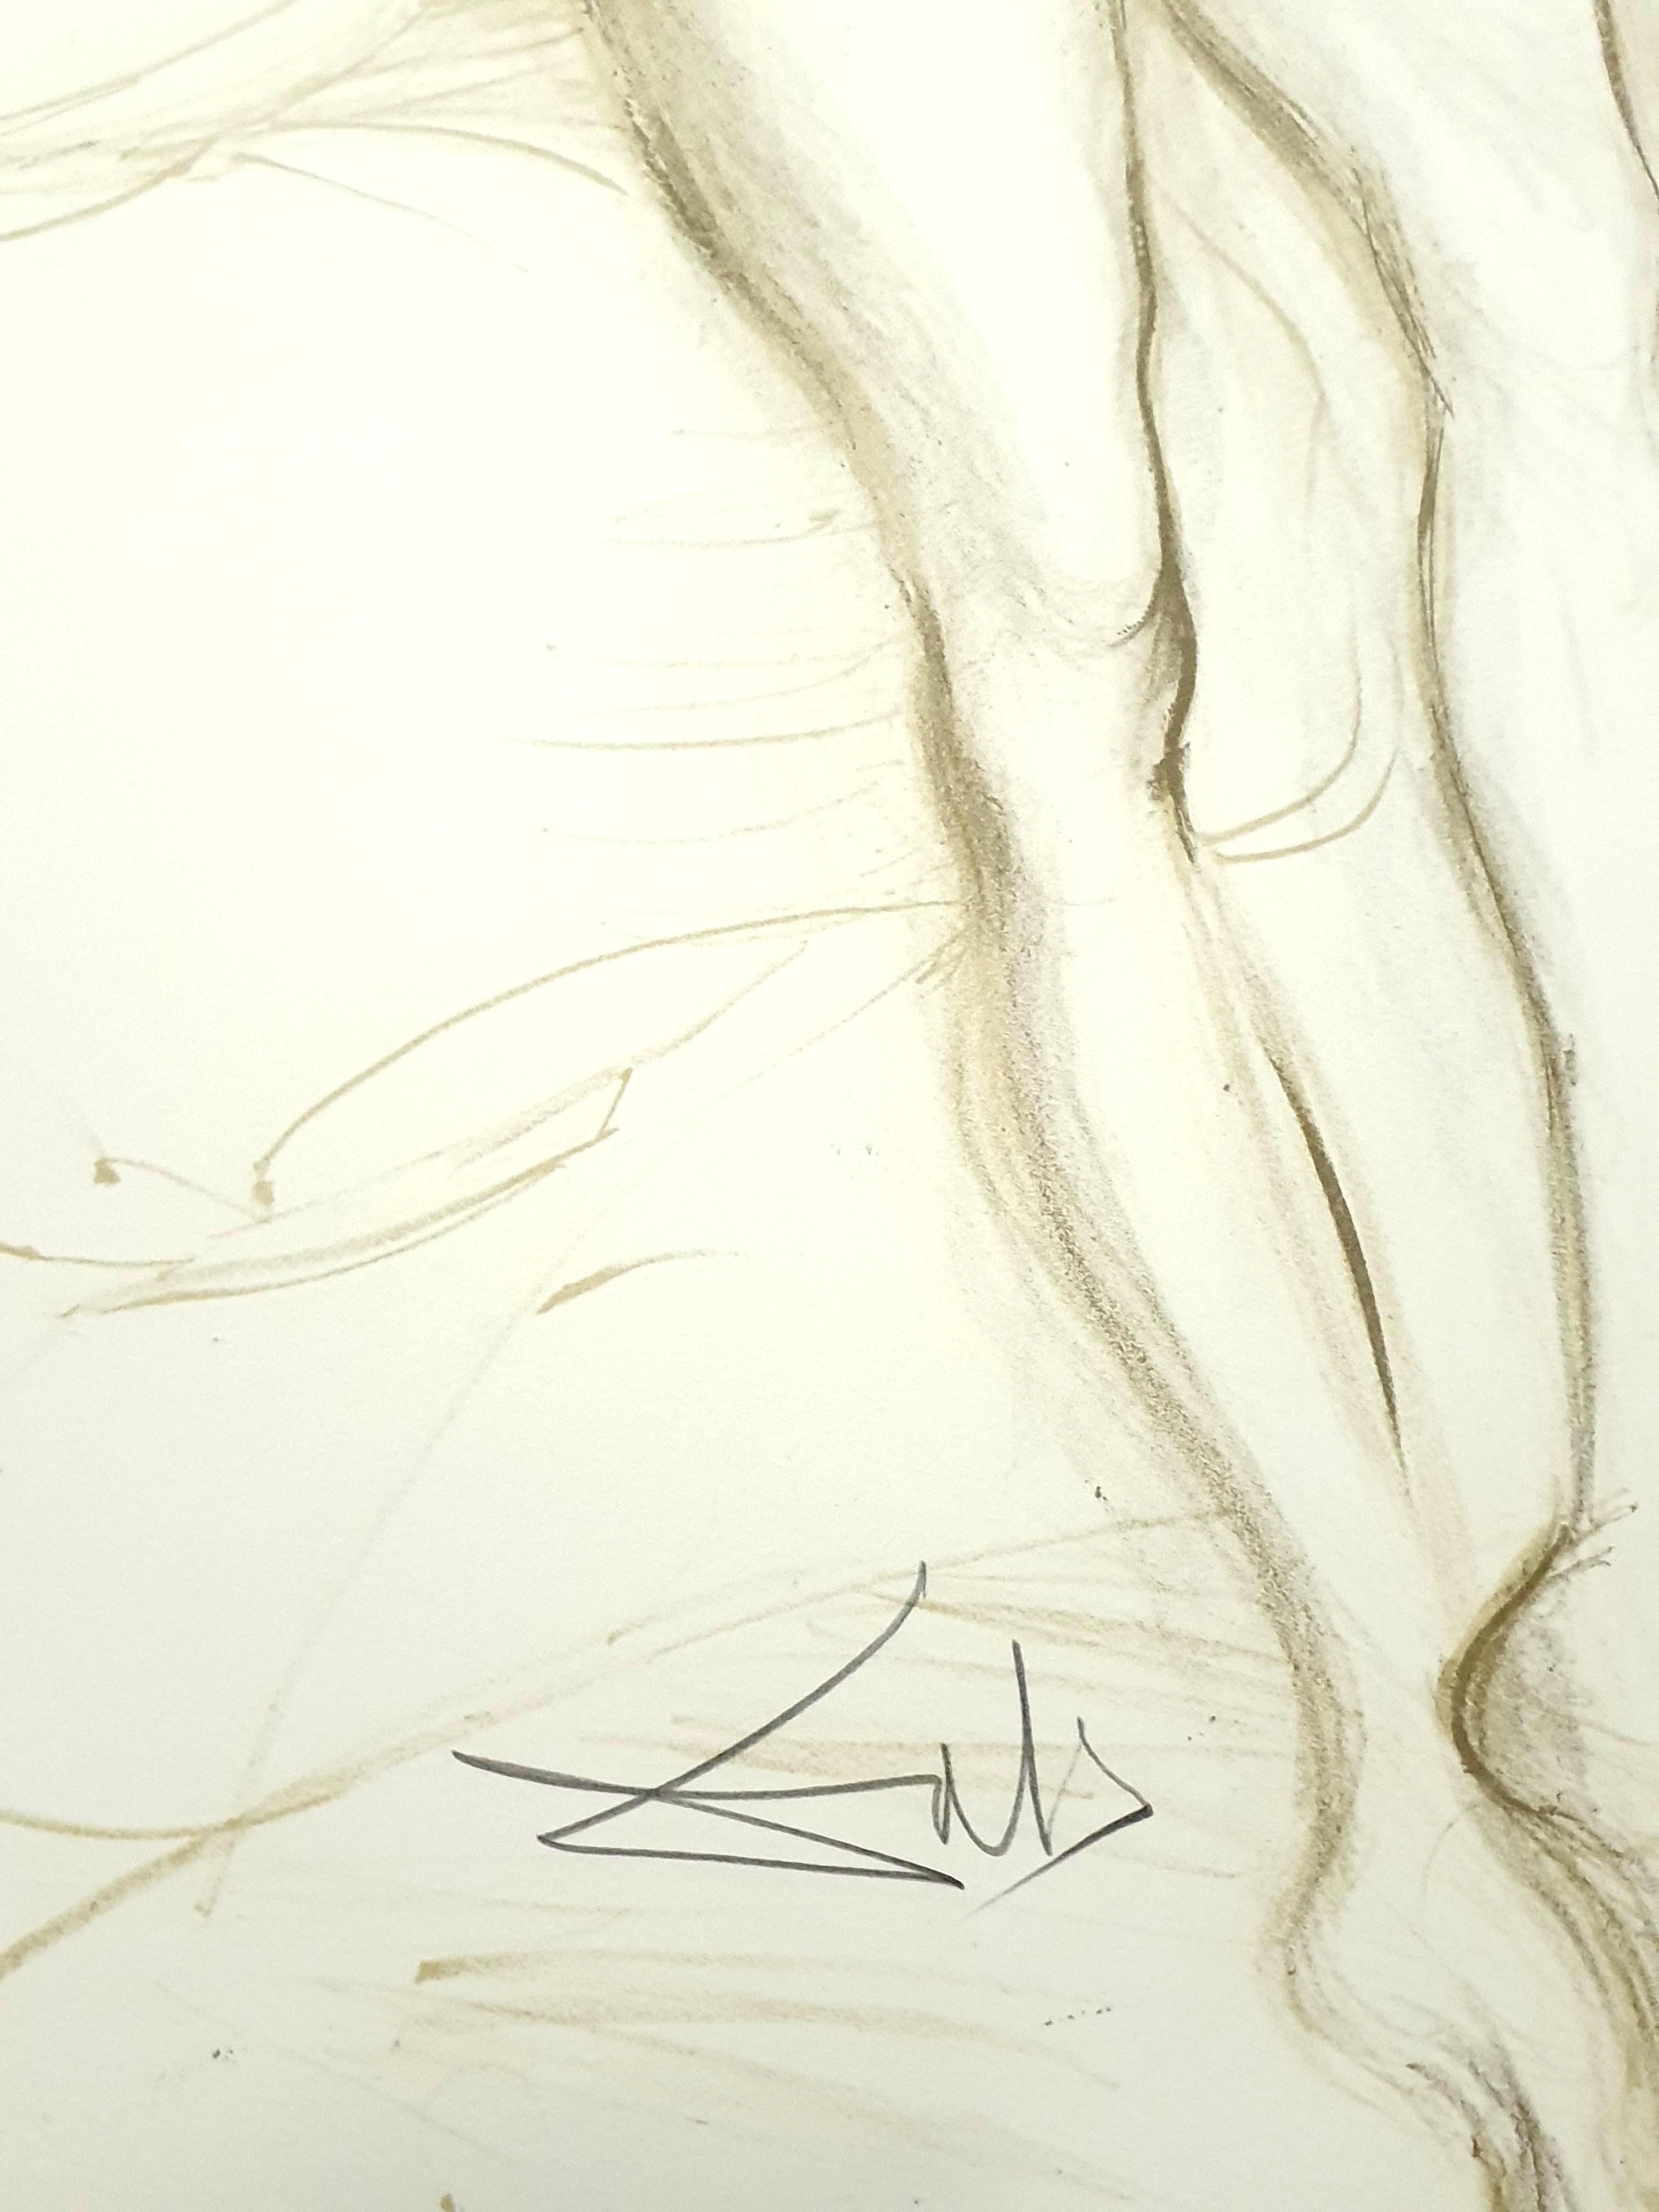 Salvador Dali - Nu aux bras levés - Lithographie originale signée de sa main
Dimensions : 77 x 55 cm
1970
Signé au crayon et numéroté
Edition : /CXX
Références : Champ 70-8(Page 158)